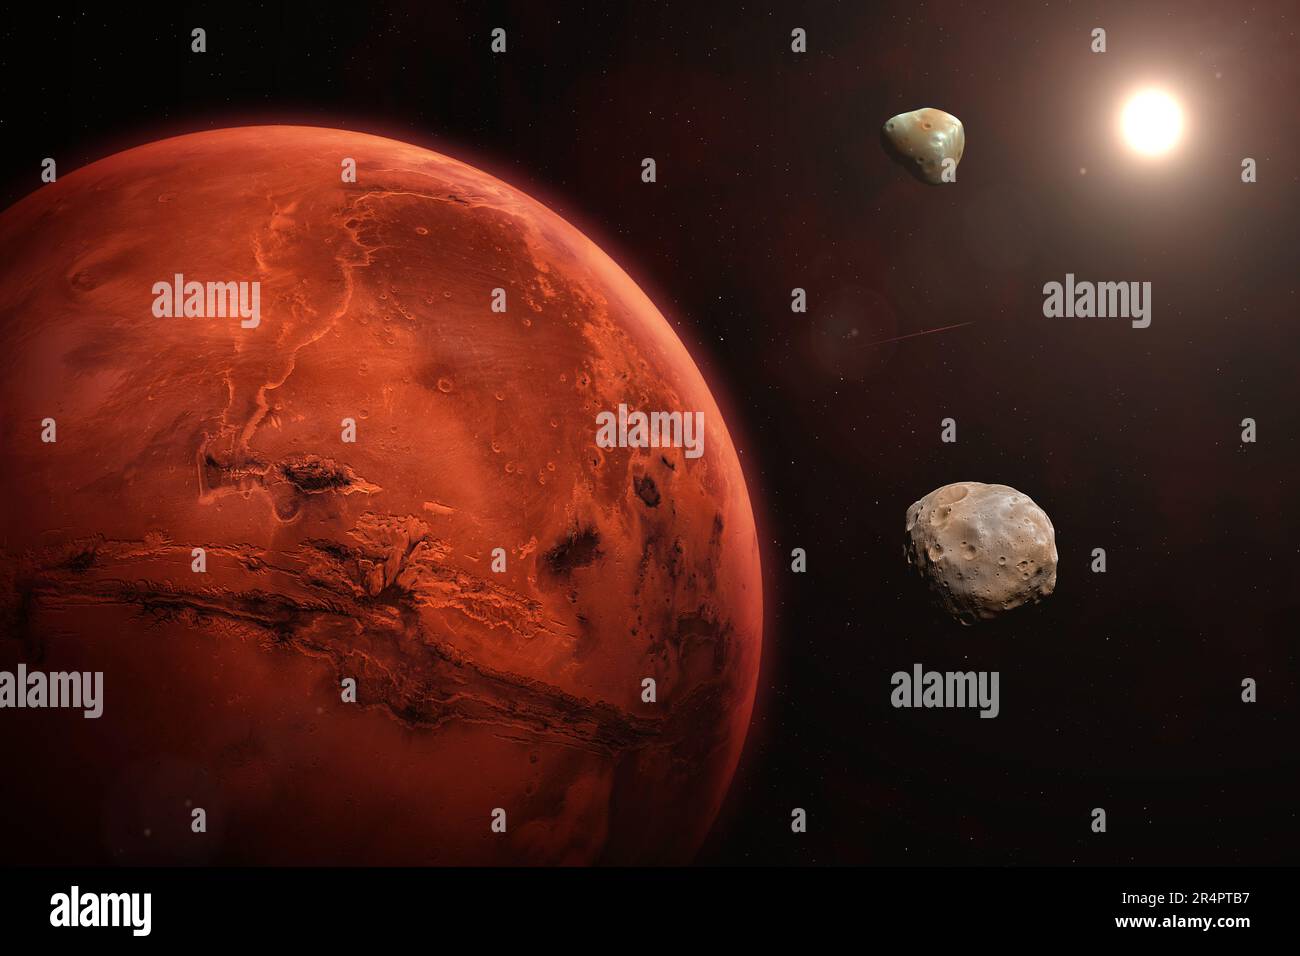 Pianeta Marte nel cielo stellato del sistema solare. Marte, Phobos e Deimos. Marte è un pianeta rosso del sistema solare. Elementi forniti dalla NASA. Foto Stock